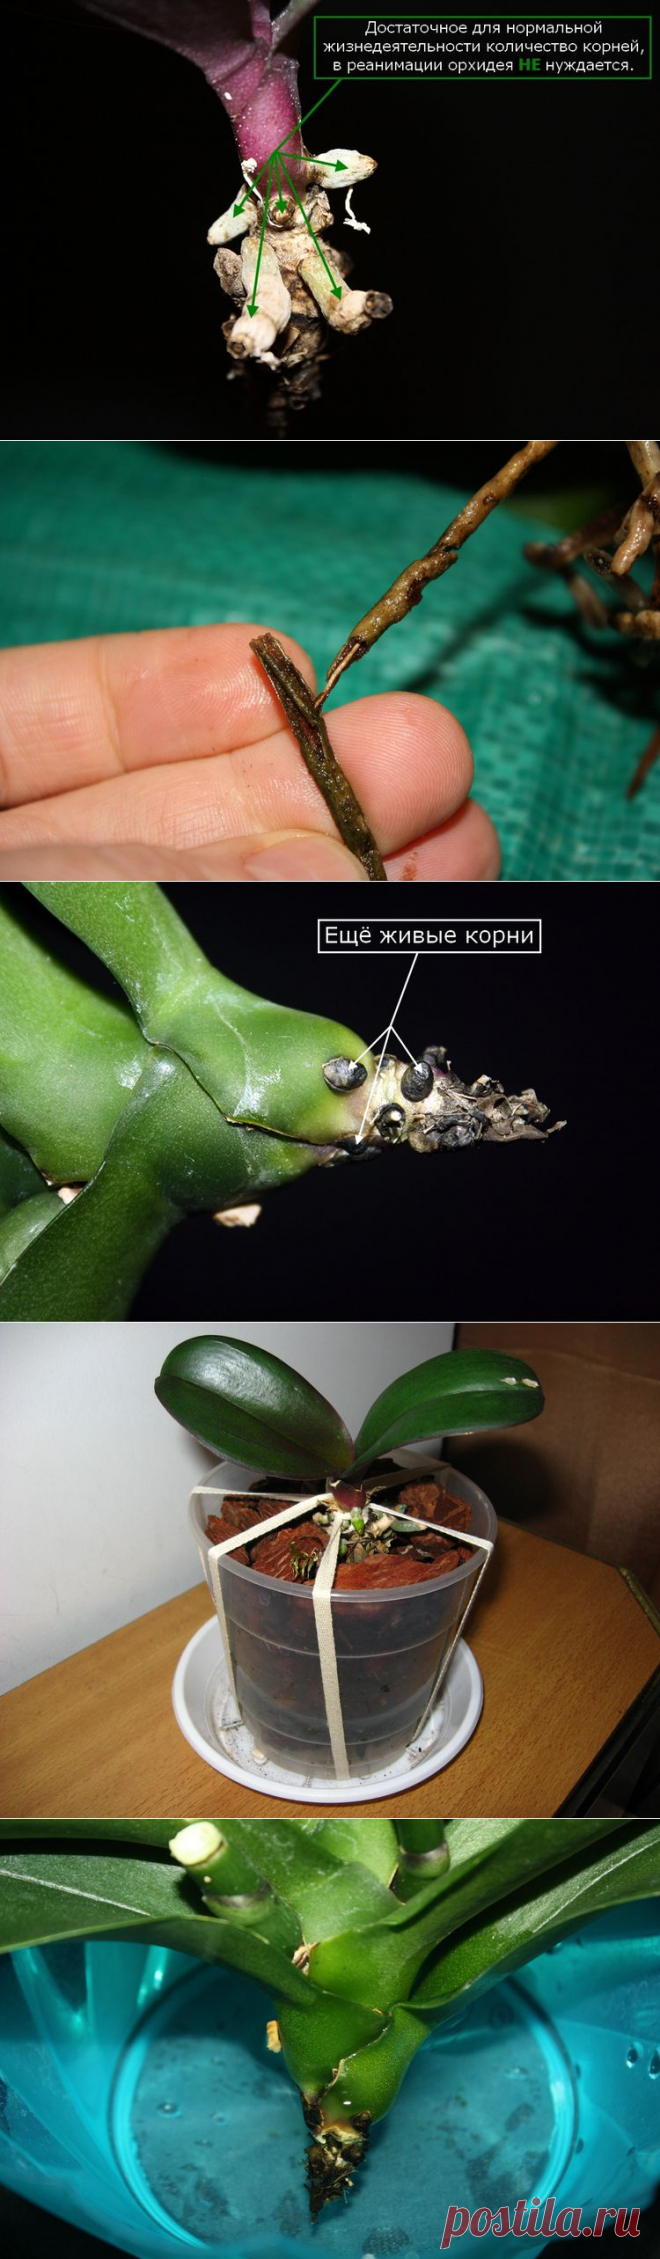 реанимация орхидей фото